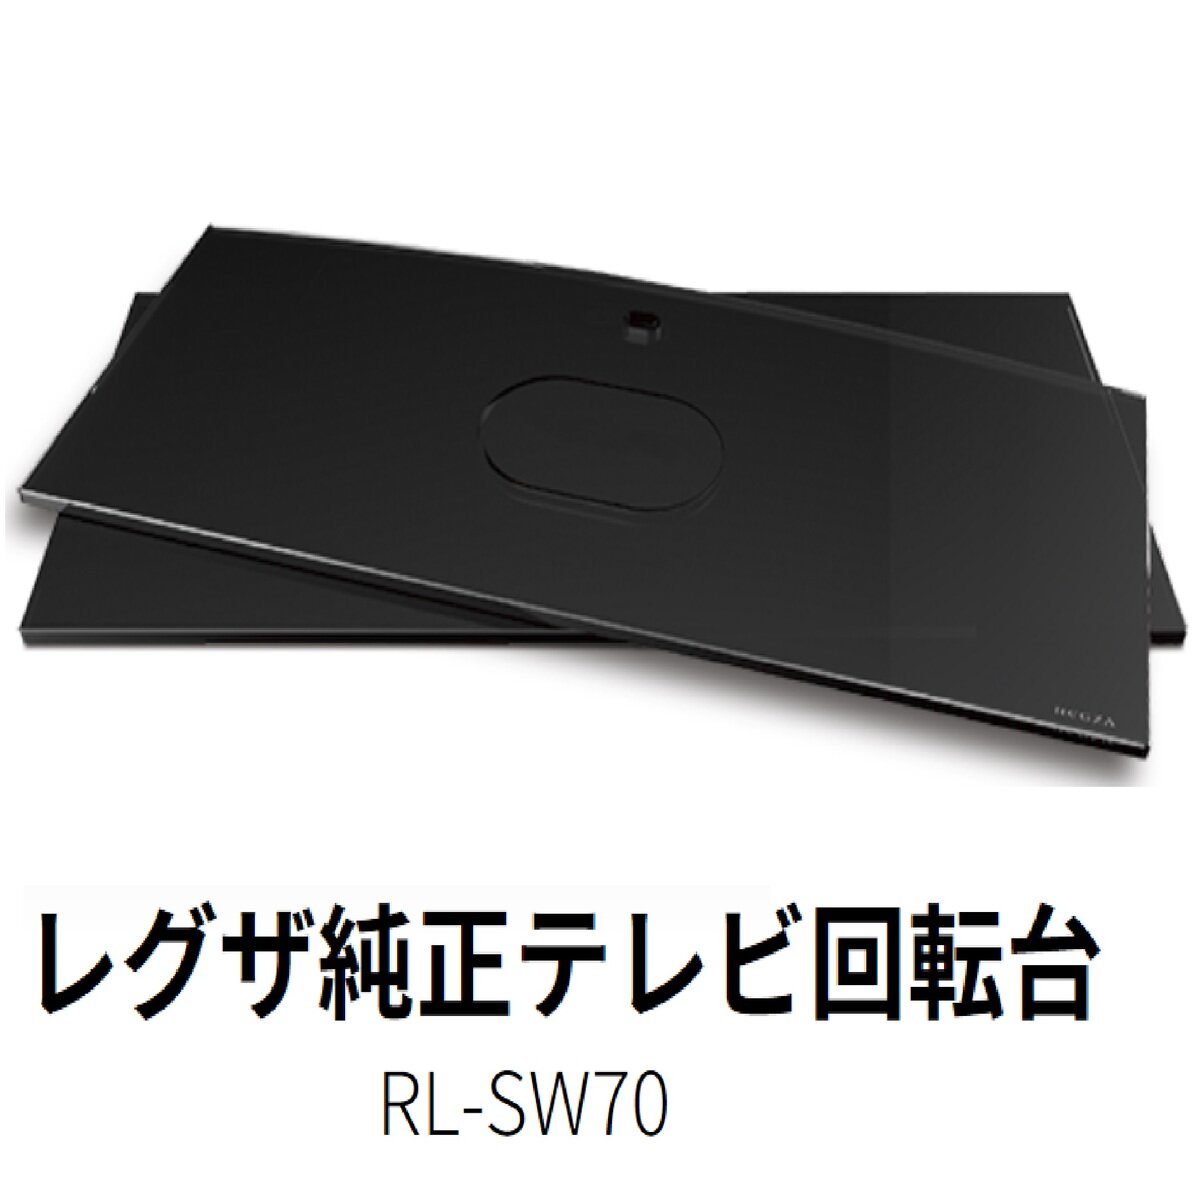 東芝 レグザ テレビ回転台 RL-SW70